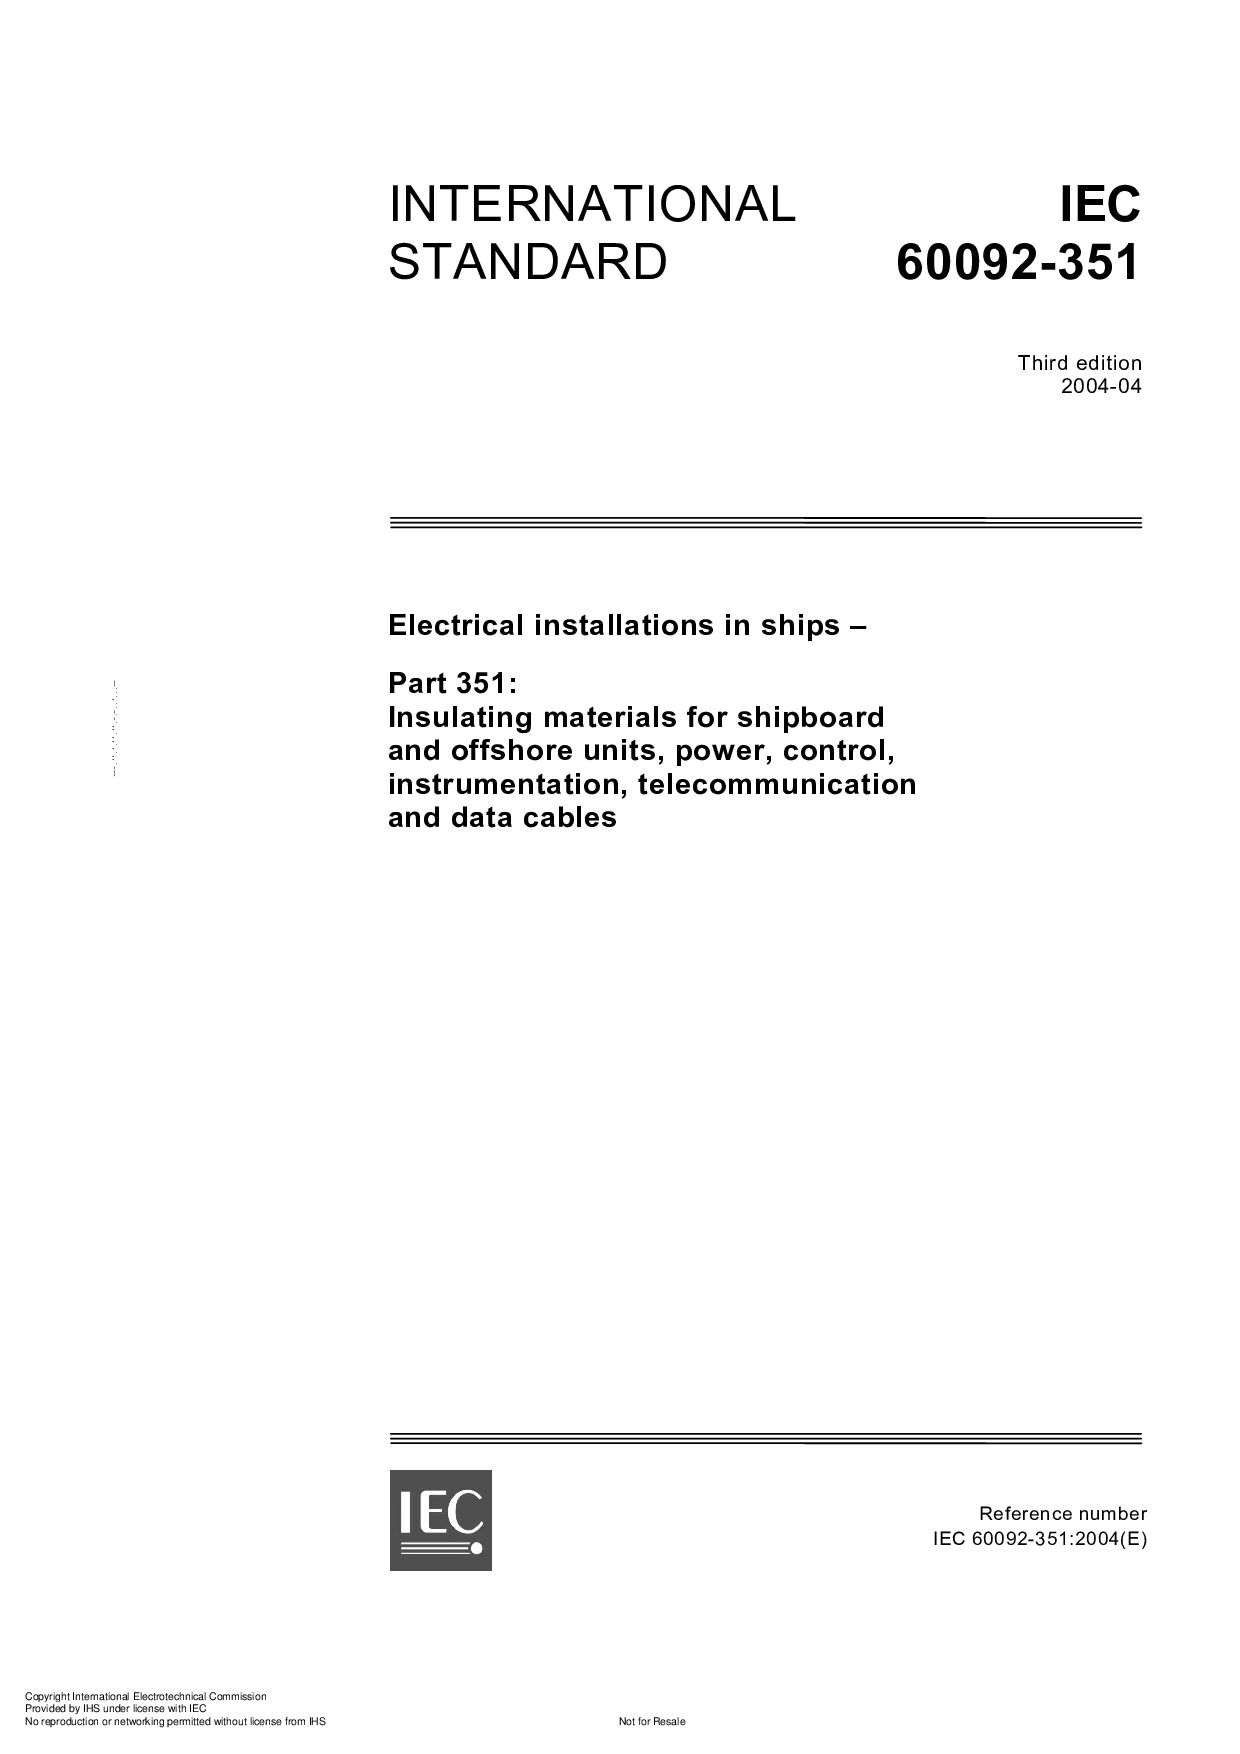 IEC 60092-351:2004封面图